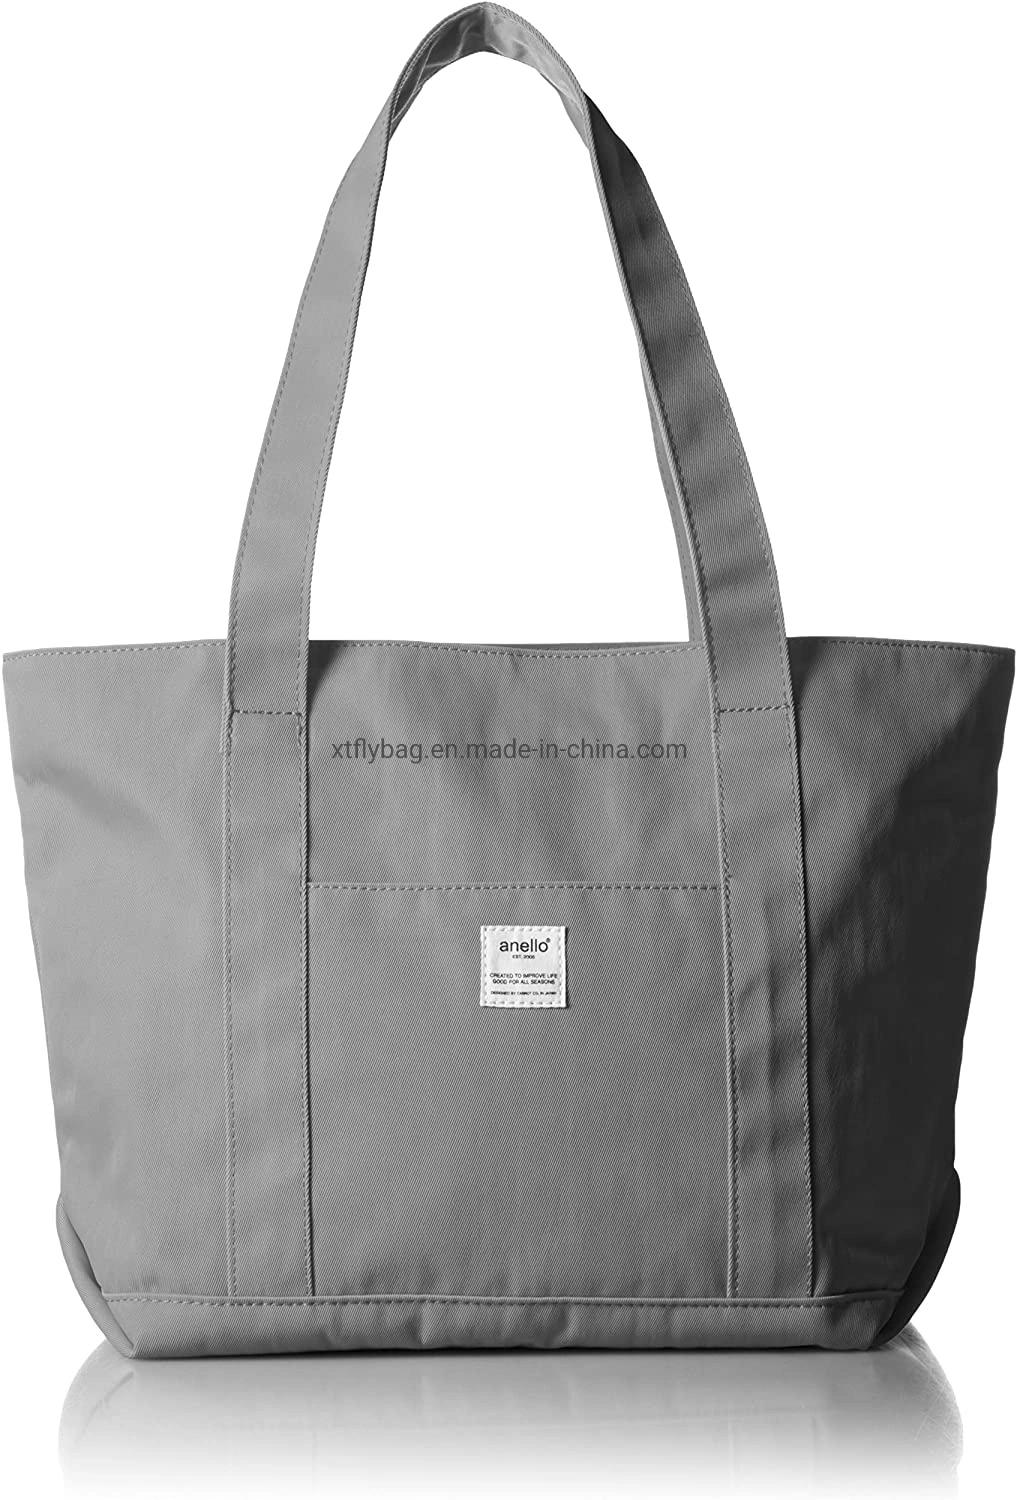 Shopping Tote Bag with Handle Polyester Handbag